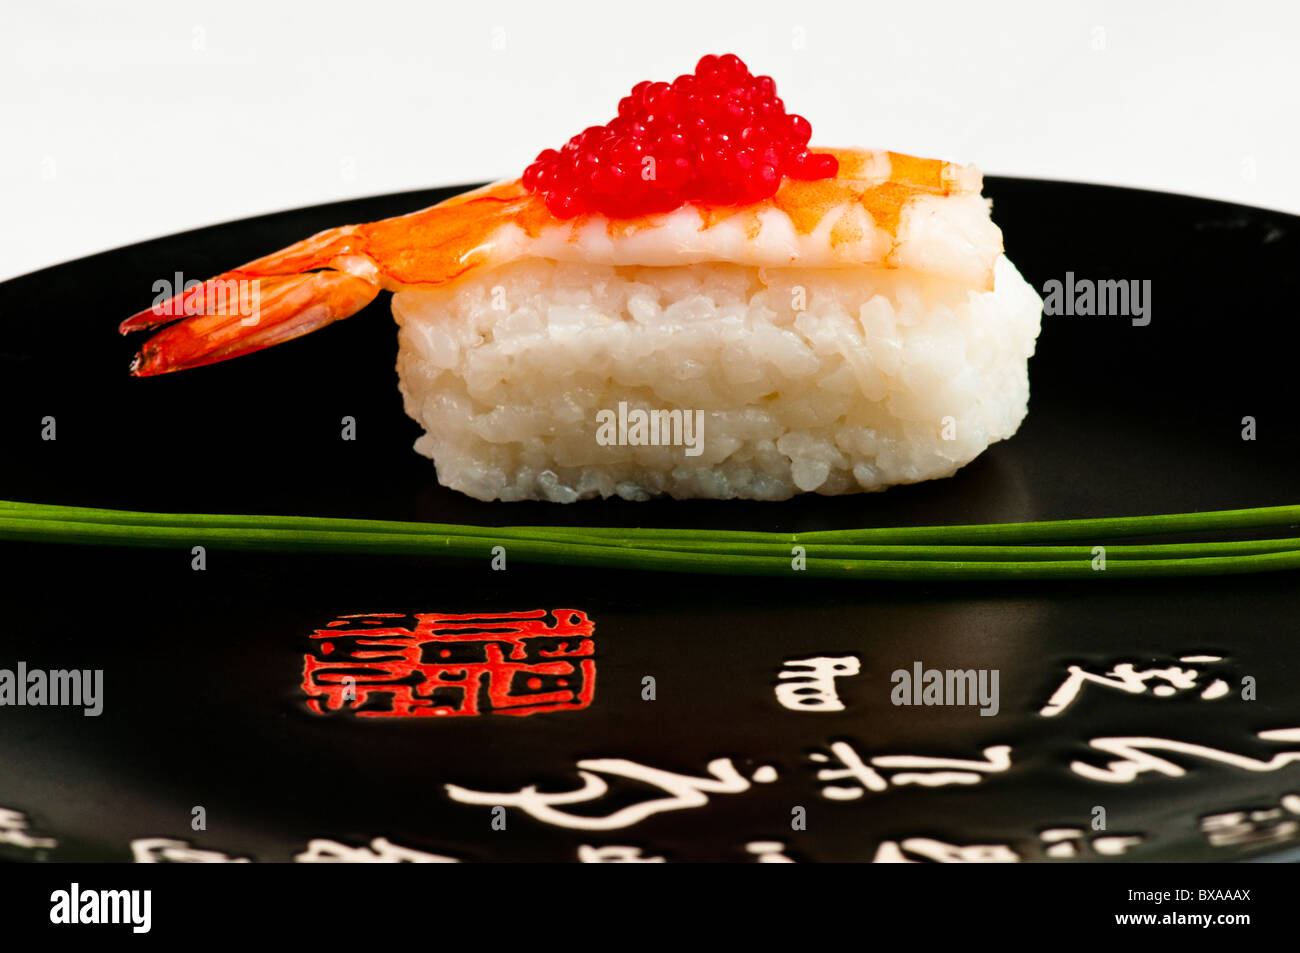 Nigiri sushi avec crevette, oeufs de poisson rouge et garni de ciboulette. Sur une plaque noire avec l'écriture japonaise en rouge et blanc. Banque D'Images